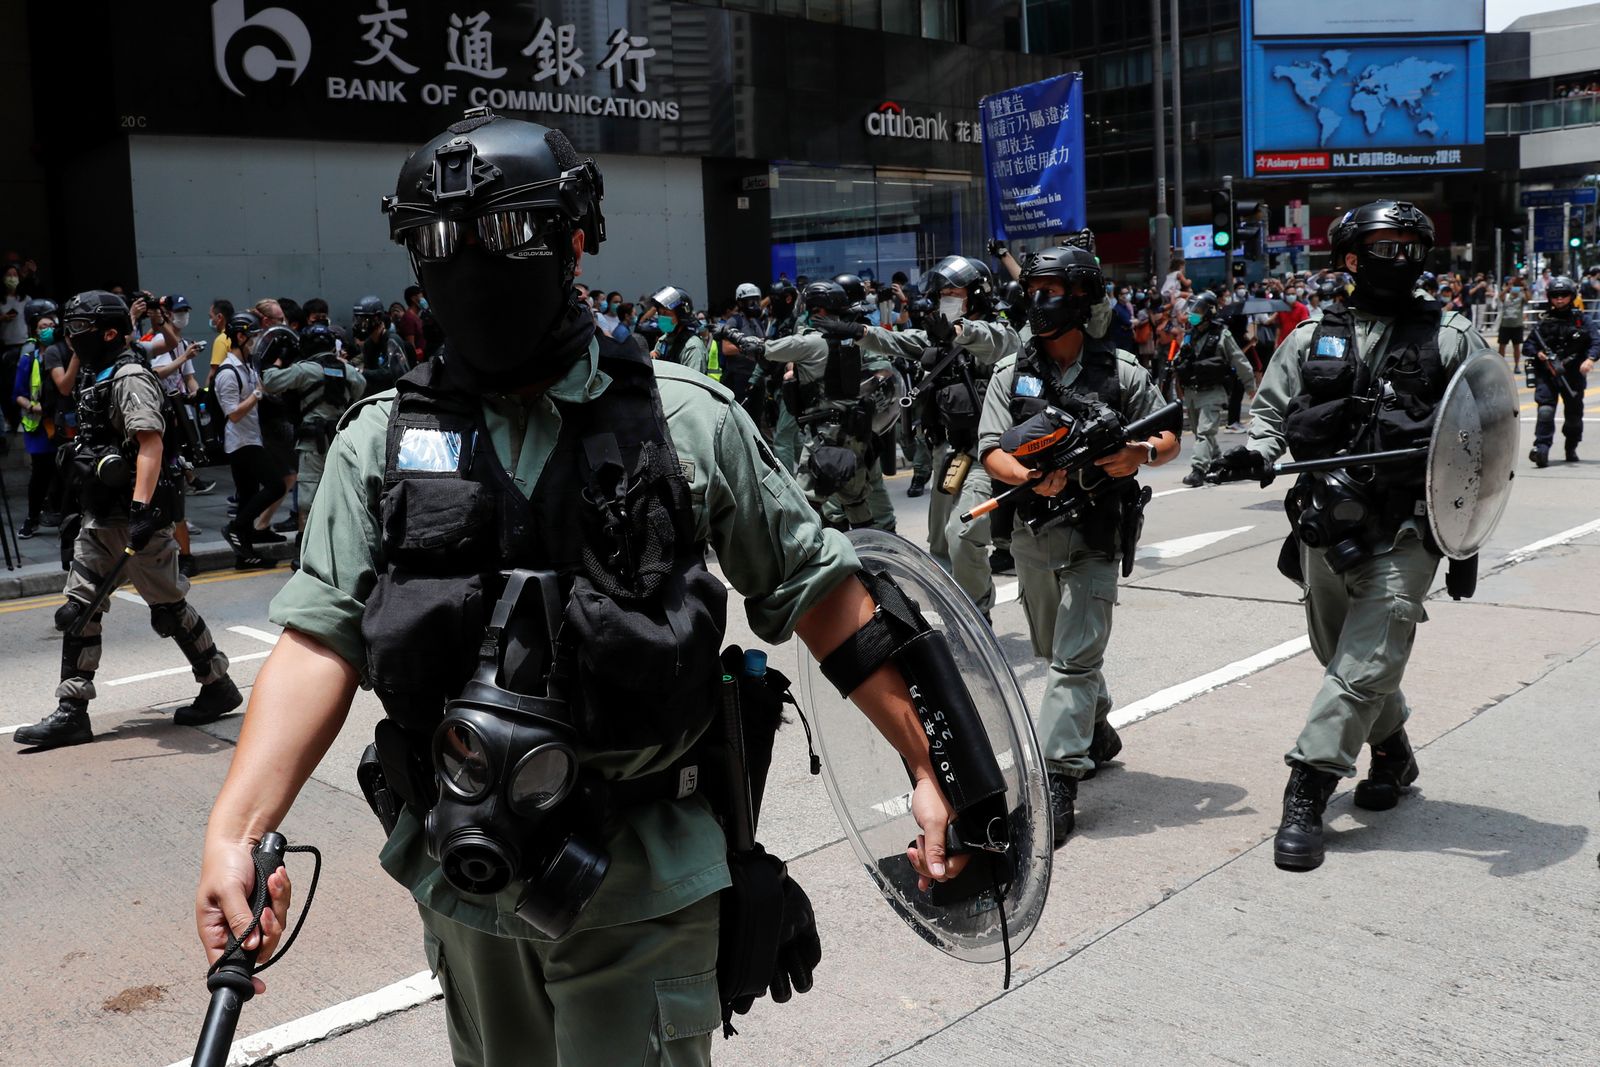 ضباط شرطة مكافحة الشغب ينتشرون في شوارع هونغ كونغ لمواجهة الاحتجاجات  - REUTERS